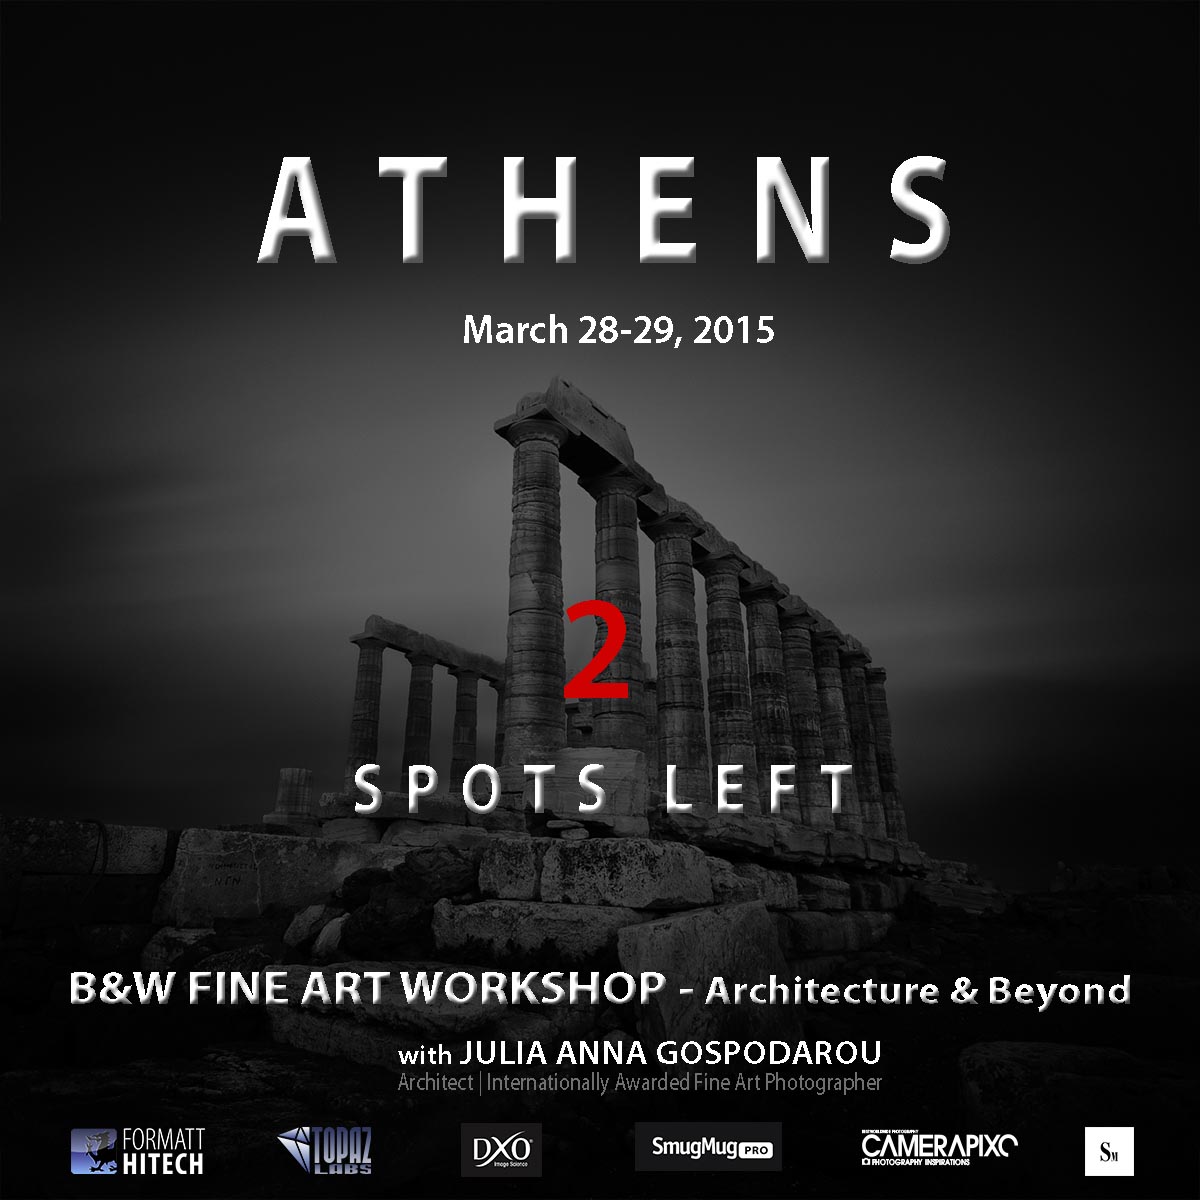 Athens Workshop 2015 - 2 Spots Left